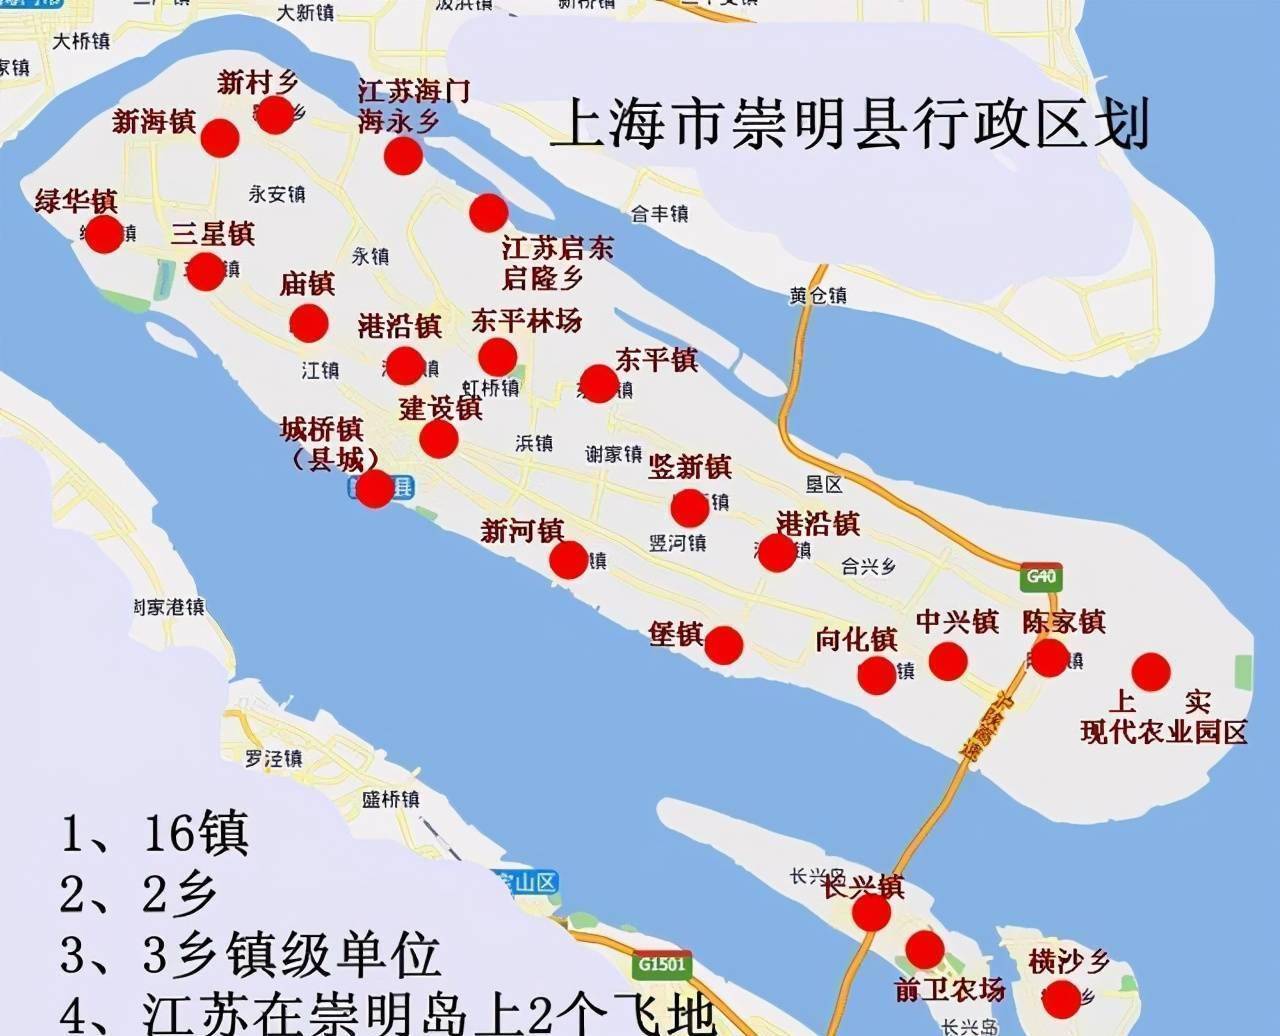 崇明岛大部分属于上海，为何海永镇和启隆镇却属于江苏